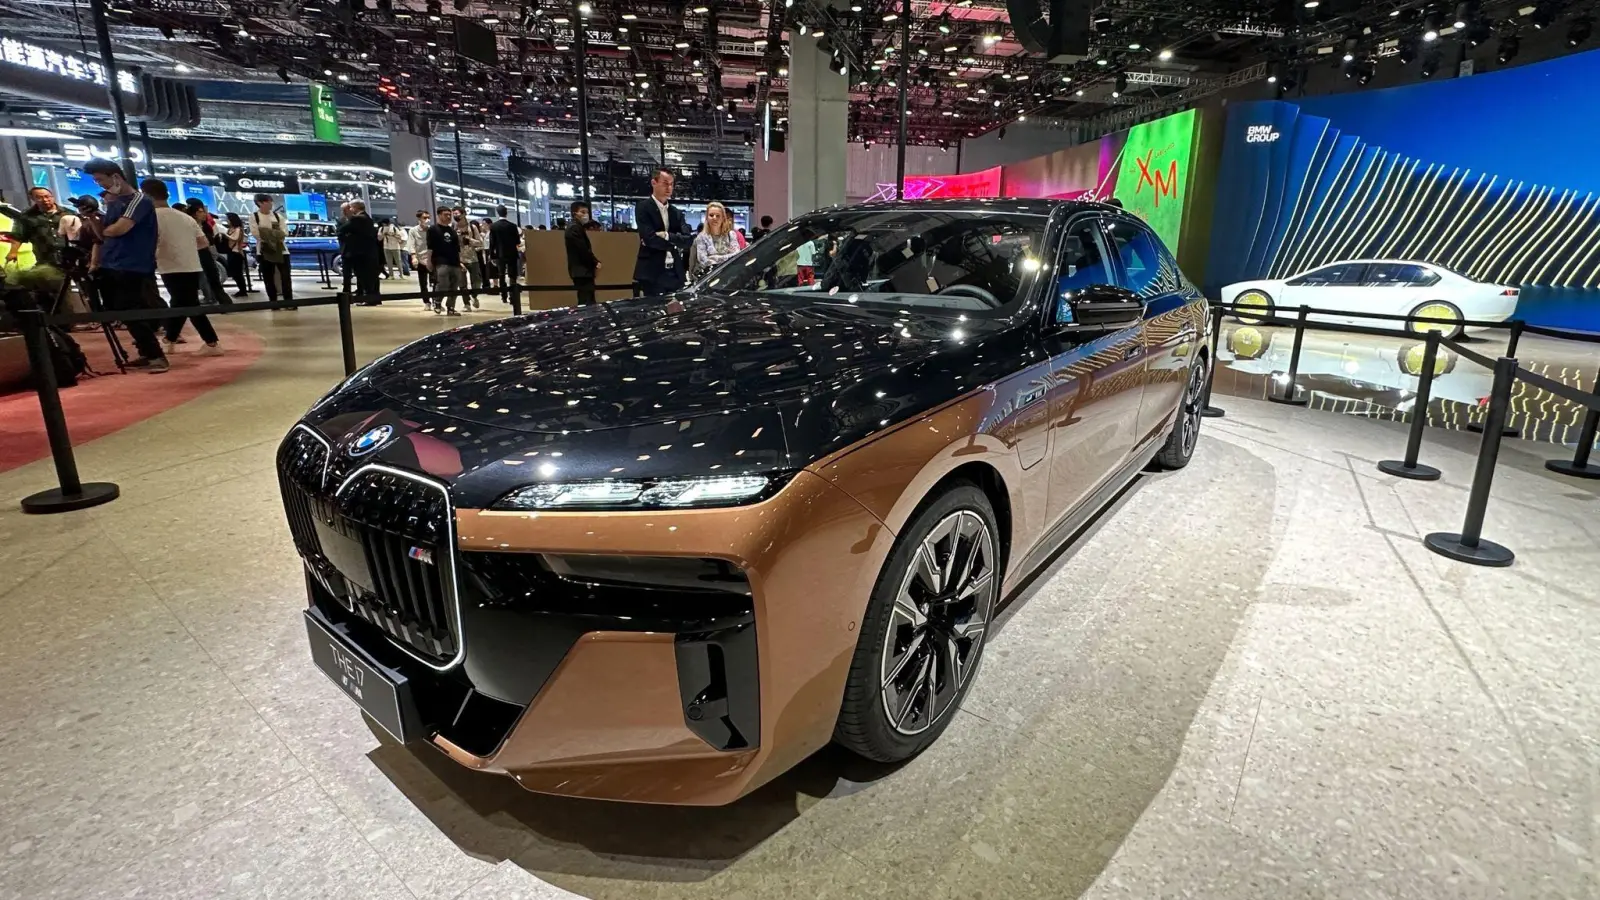 Massive Elektrofront: BMW zeigt auf der „Auto Shanghai“ den 660 PS starken und bis zu 250 km/h schnellen i7 M70. Er ist „das leistungsstärkste und schnellste vollelektrische Fahrzeug“ seines aktuellen Portfolios, so der Hersteller. (Foto: Thomas Geiger/dpa-tmn)